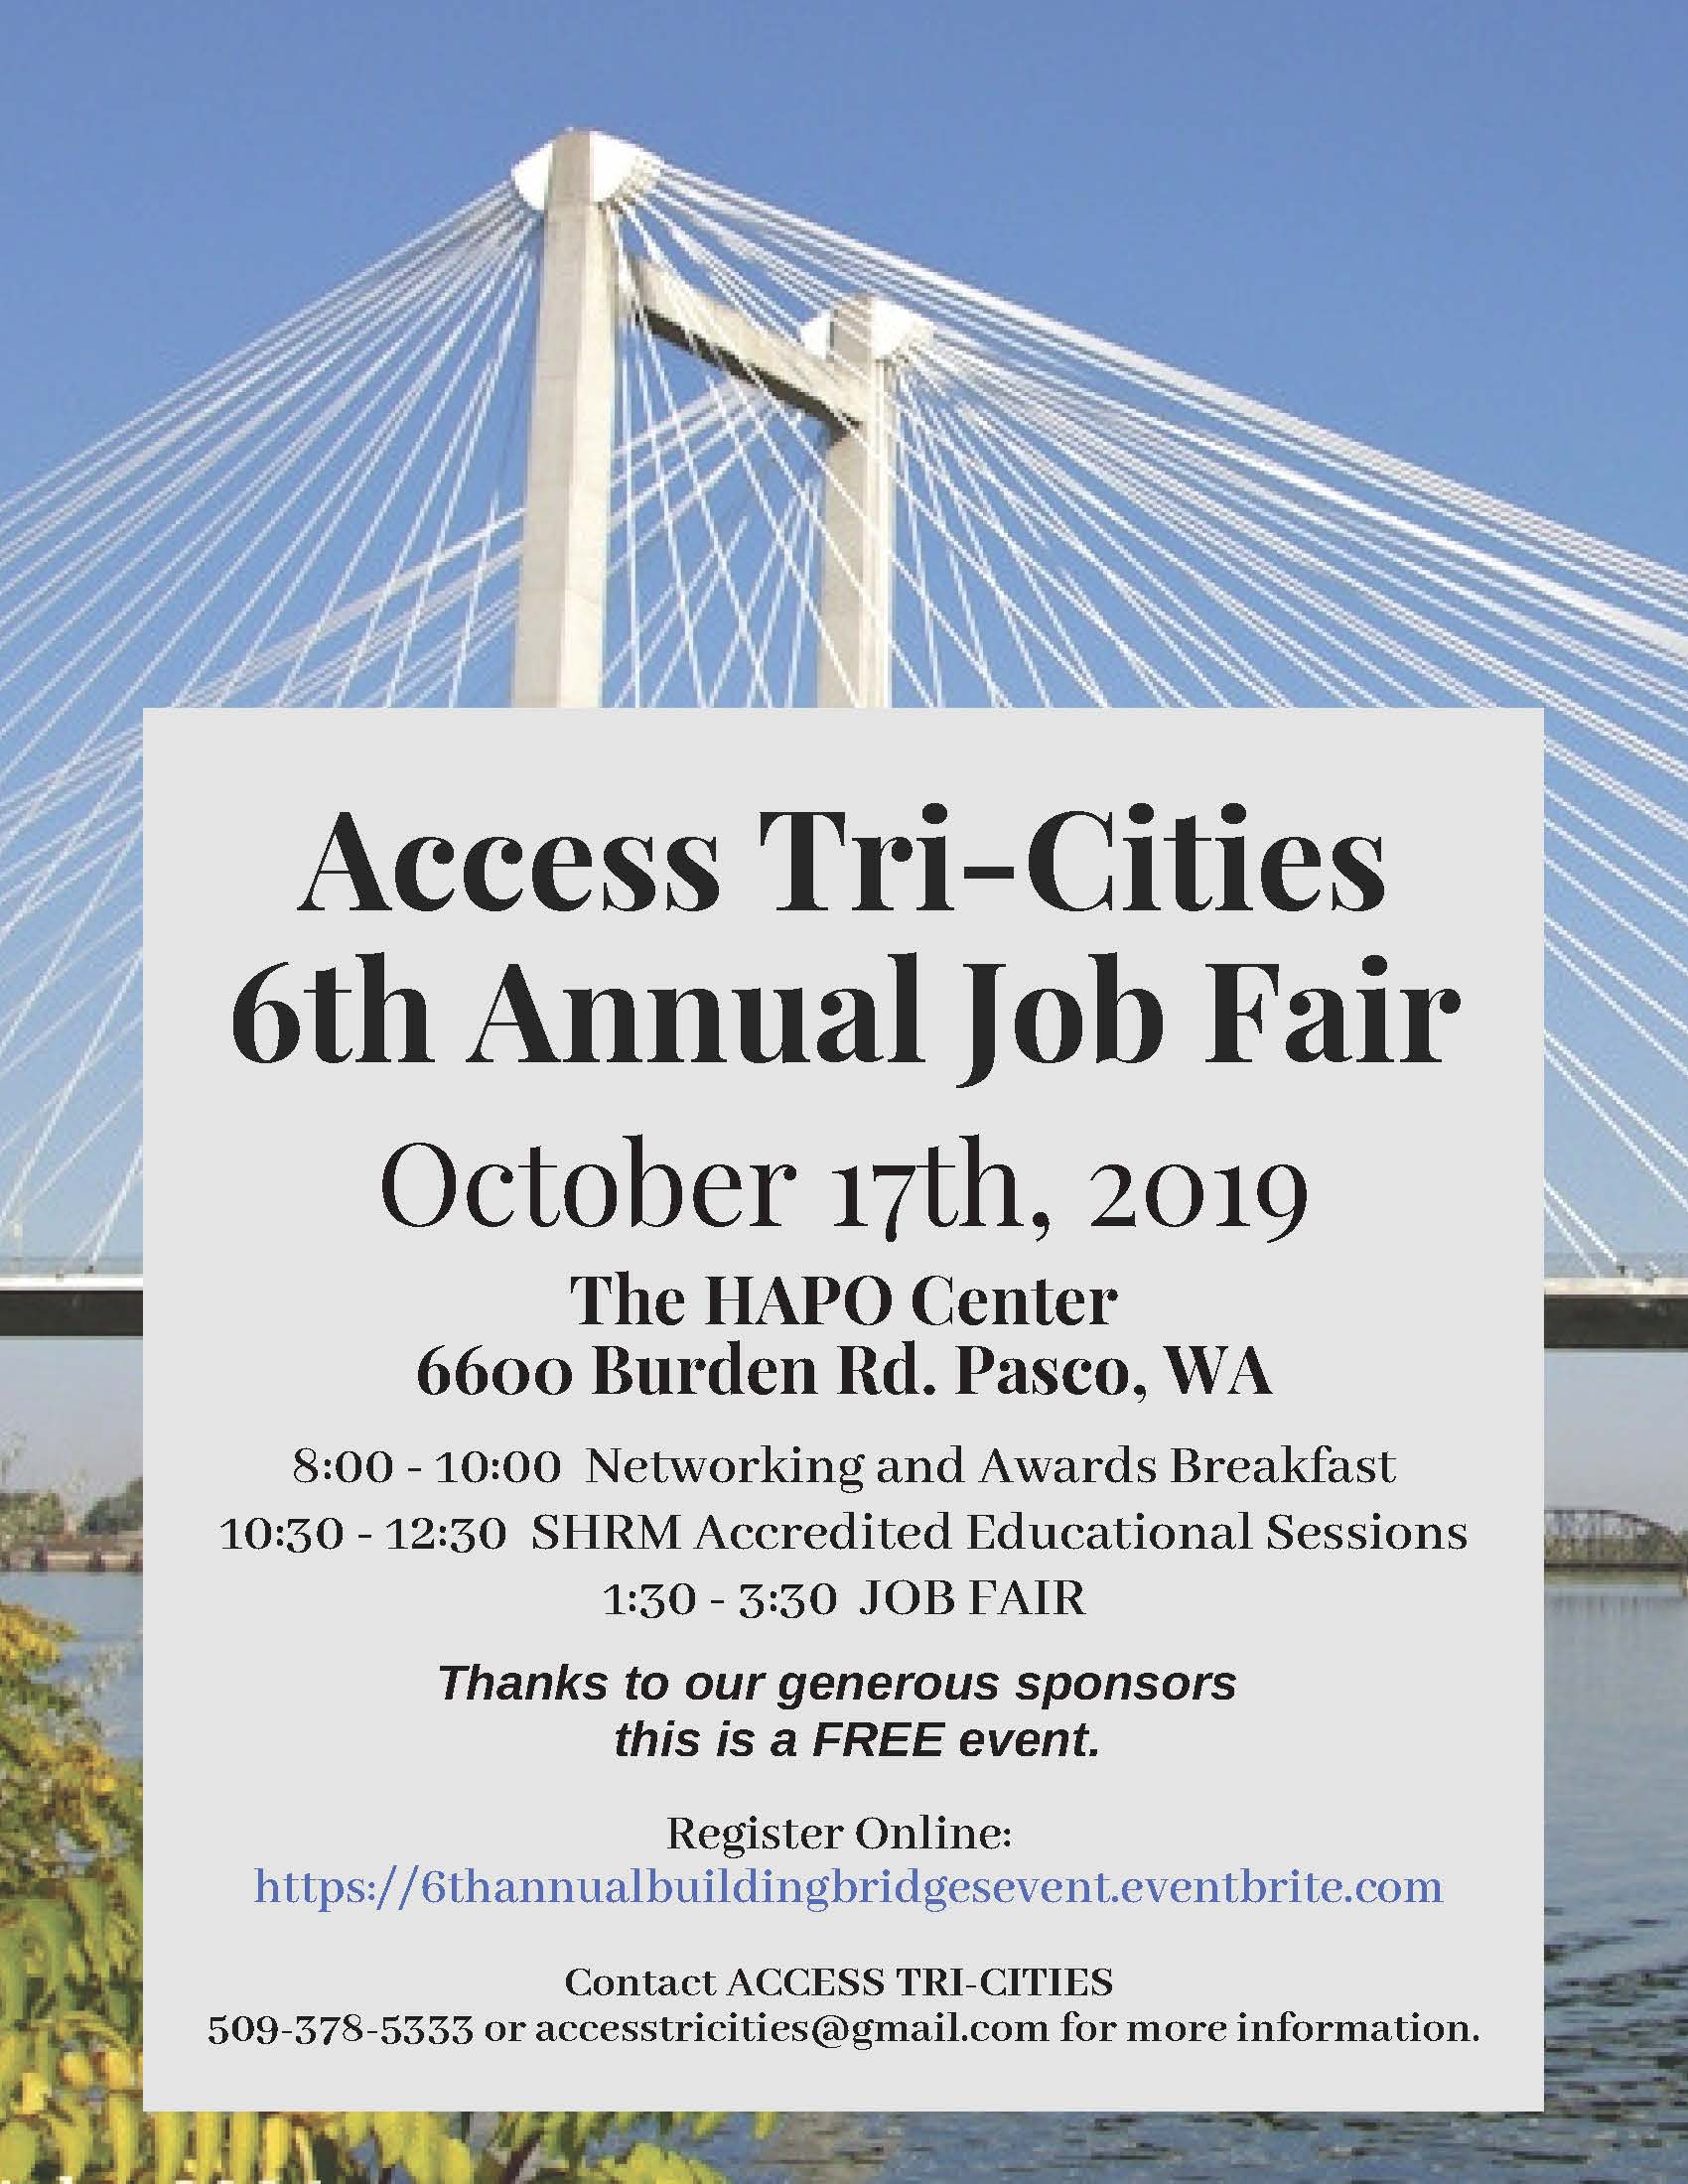 Access Tri-Cities Job Fair